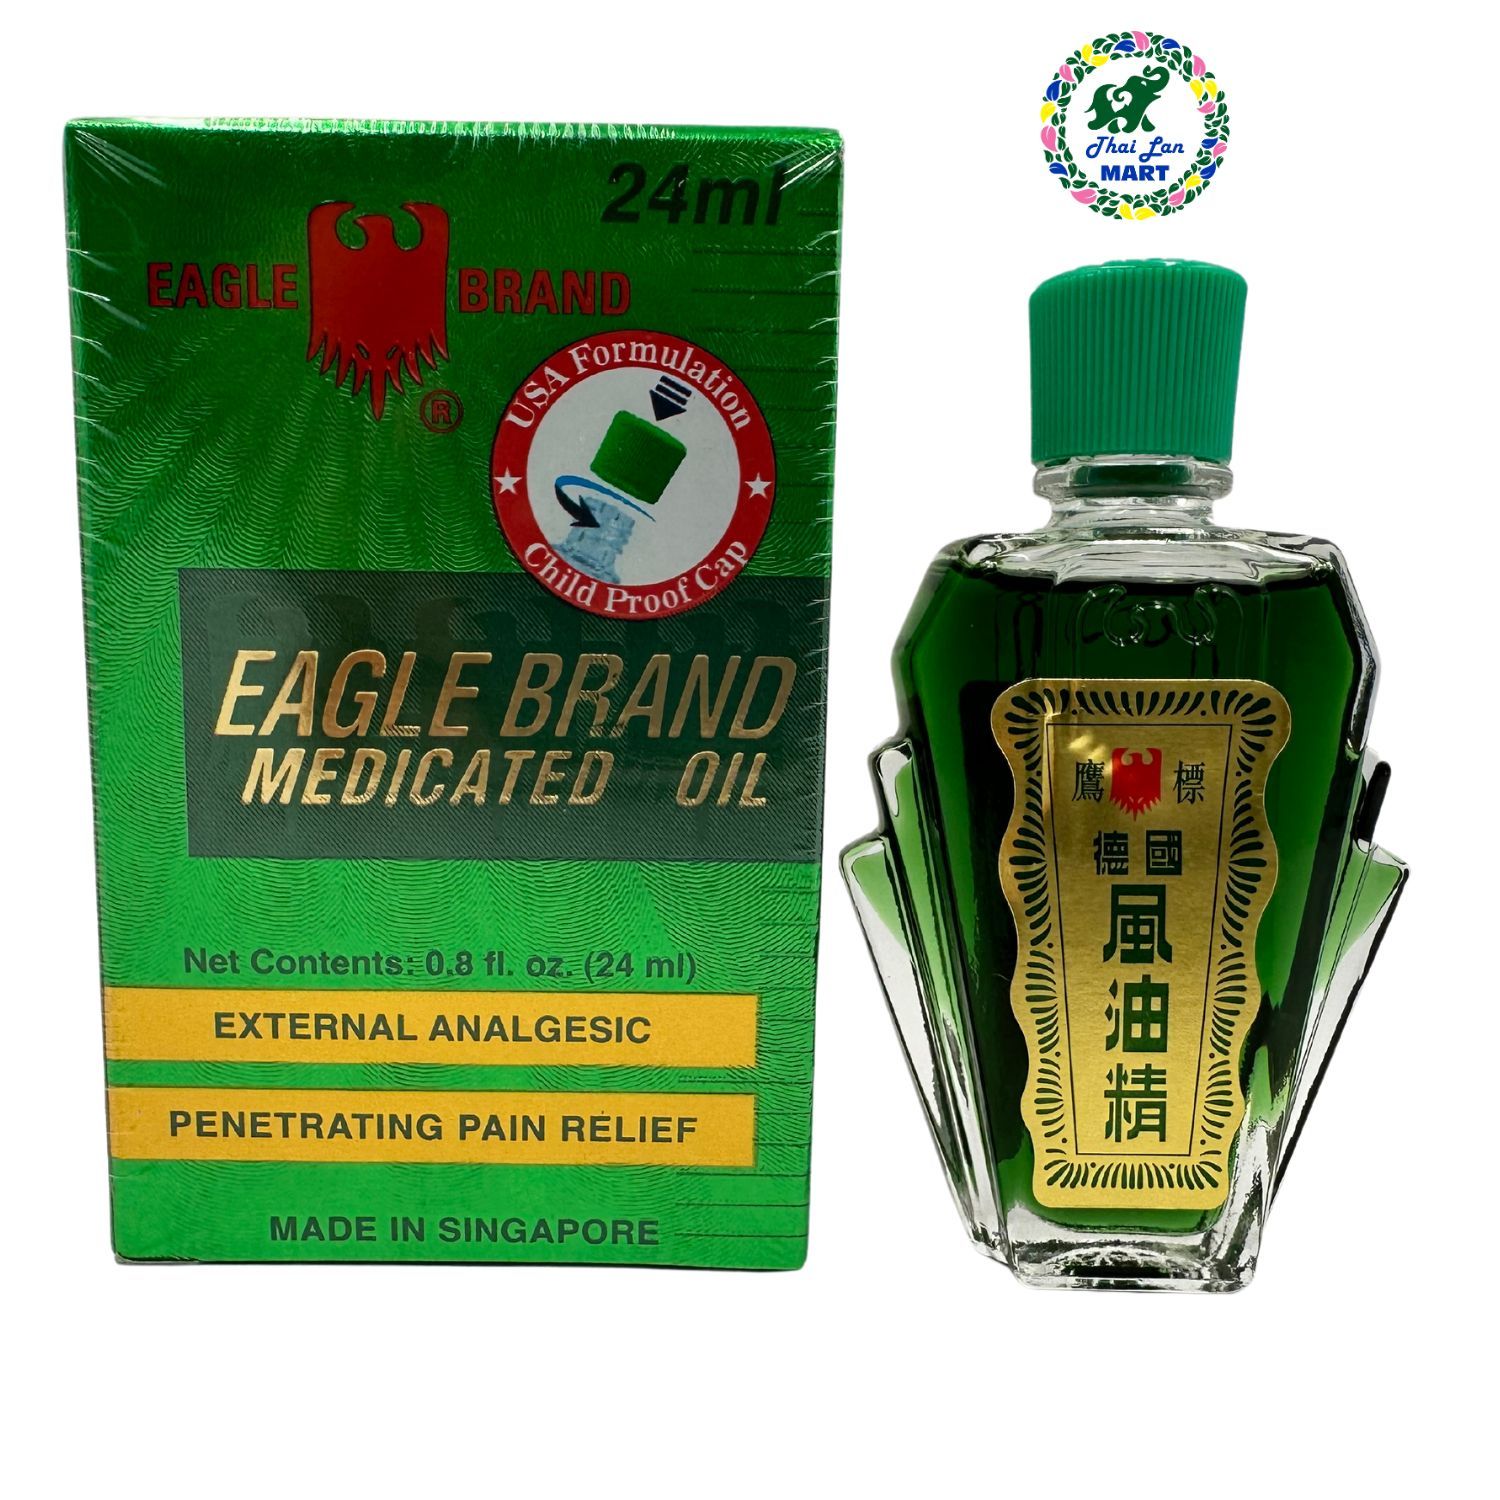  Dầu nước xanh trắng vàng hai nắp eagle brand medicated oil hàng nội địa chính hãng mỹ 